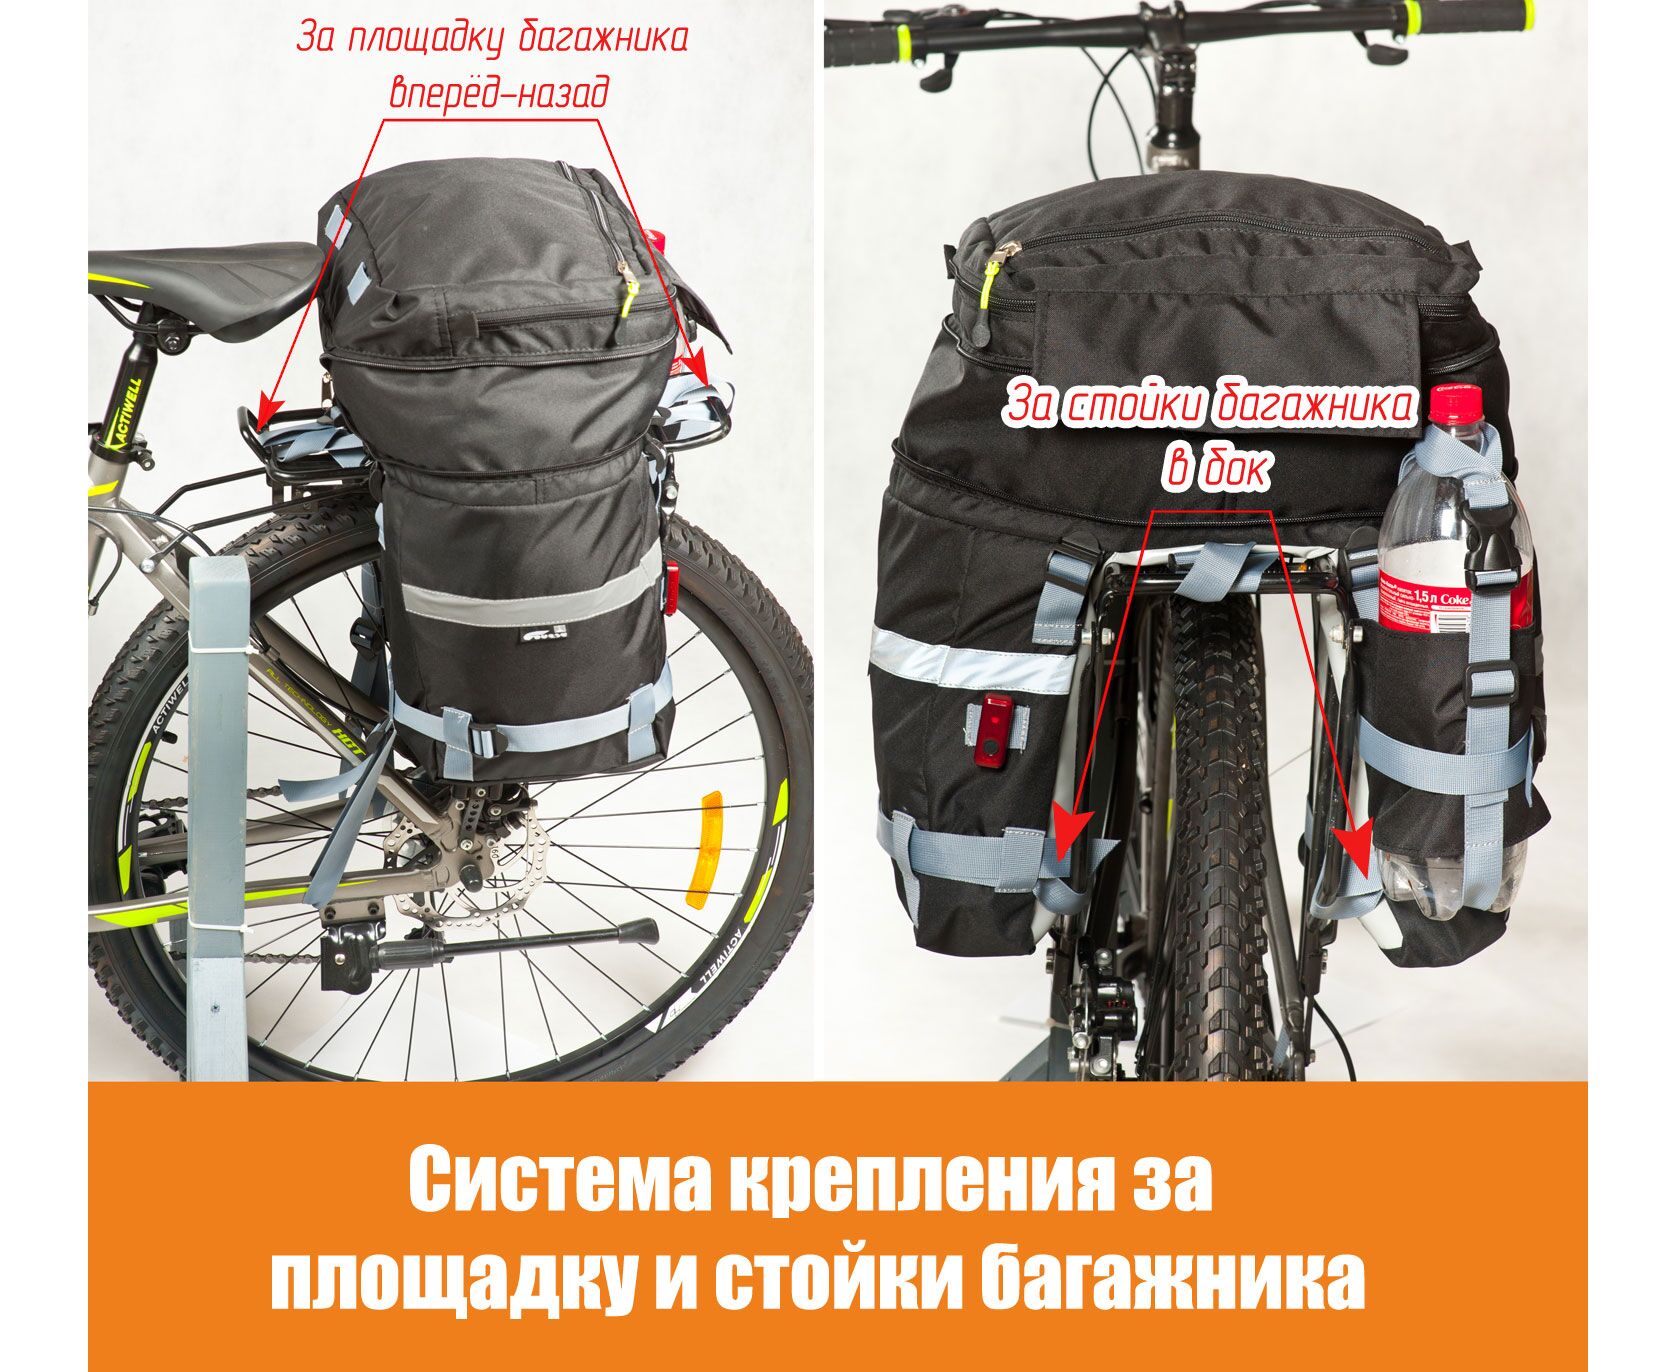 Система крепления велорюкзака (велоштанов) к багажнику велосипеда